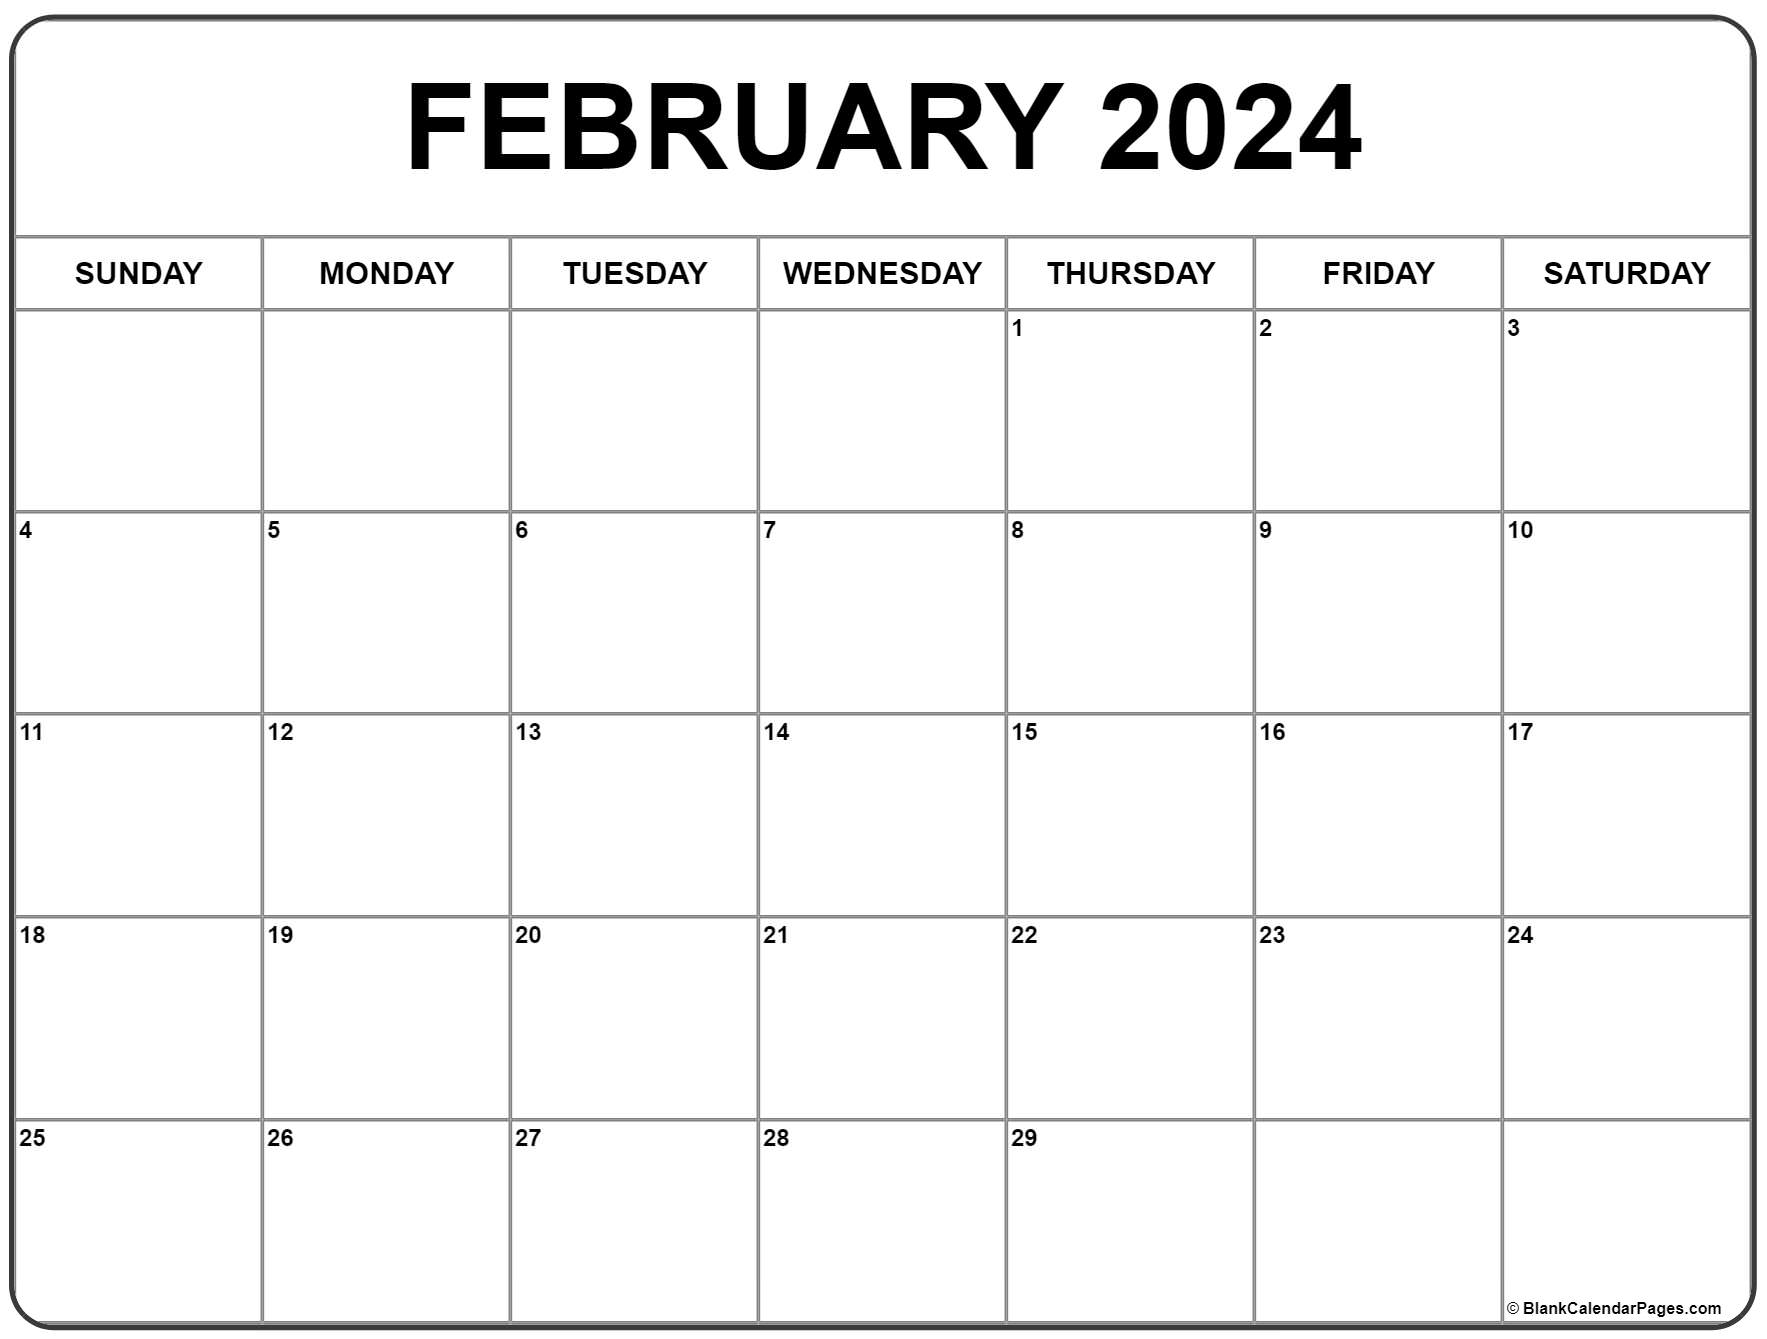 February 2024 Calendar | Free Printable Calendar for 2024 Printable February Calendar